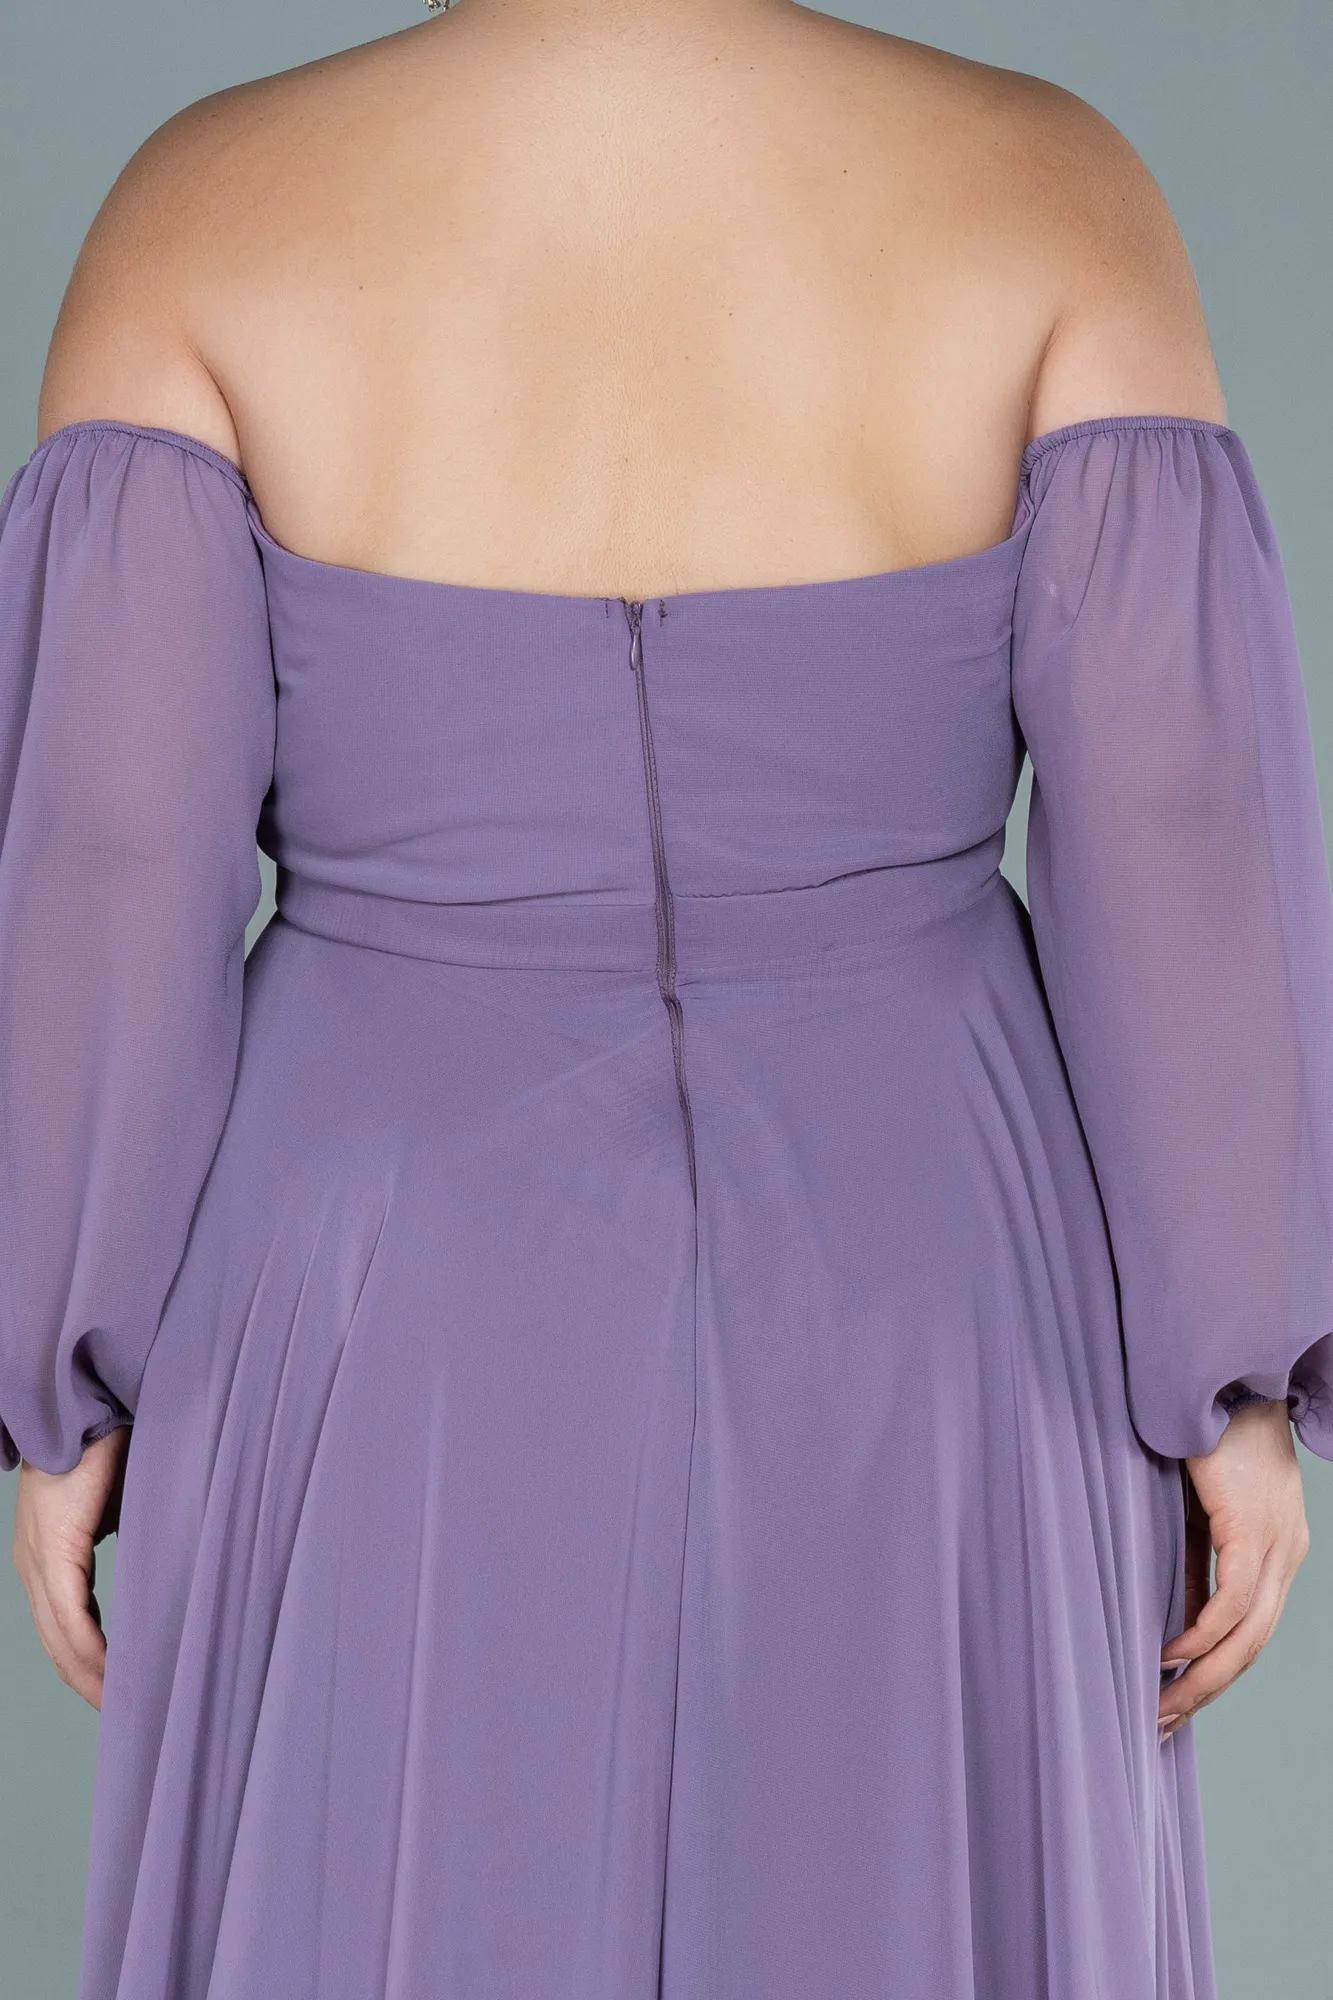 Lavender-Long Chiffon Oversized Evening Dress ABU2597